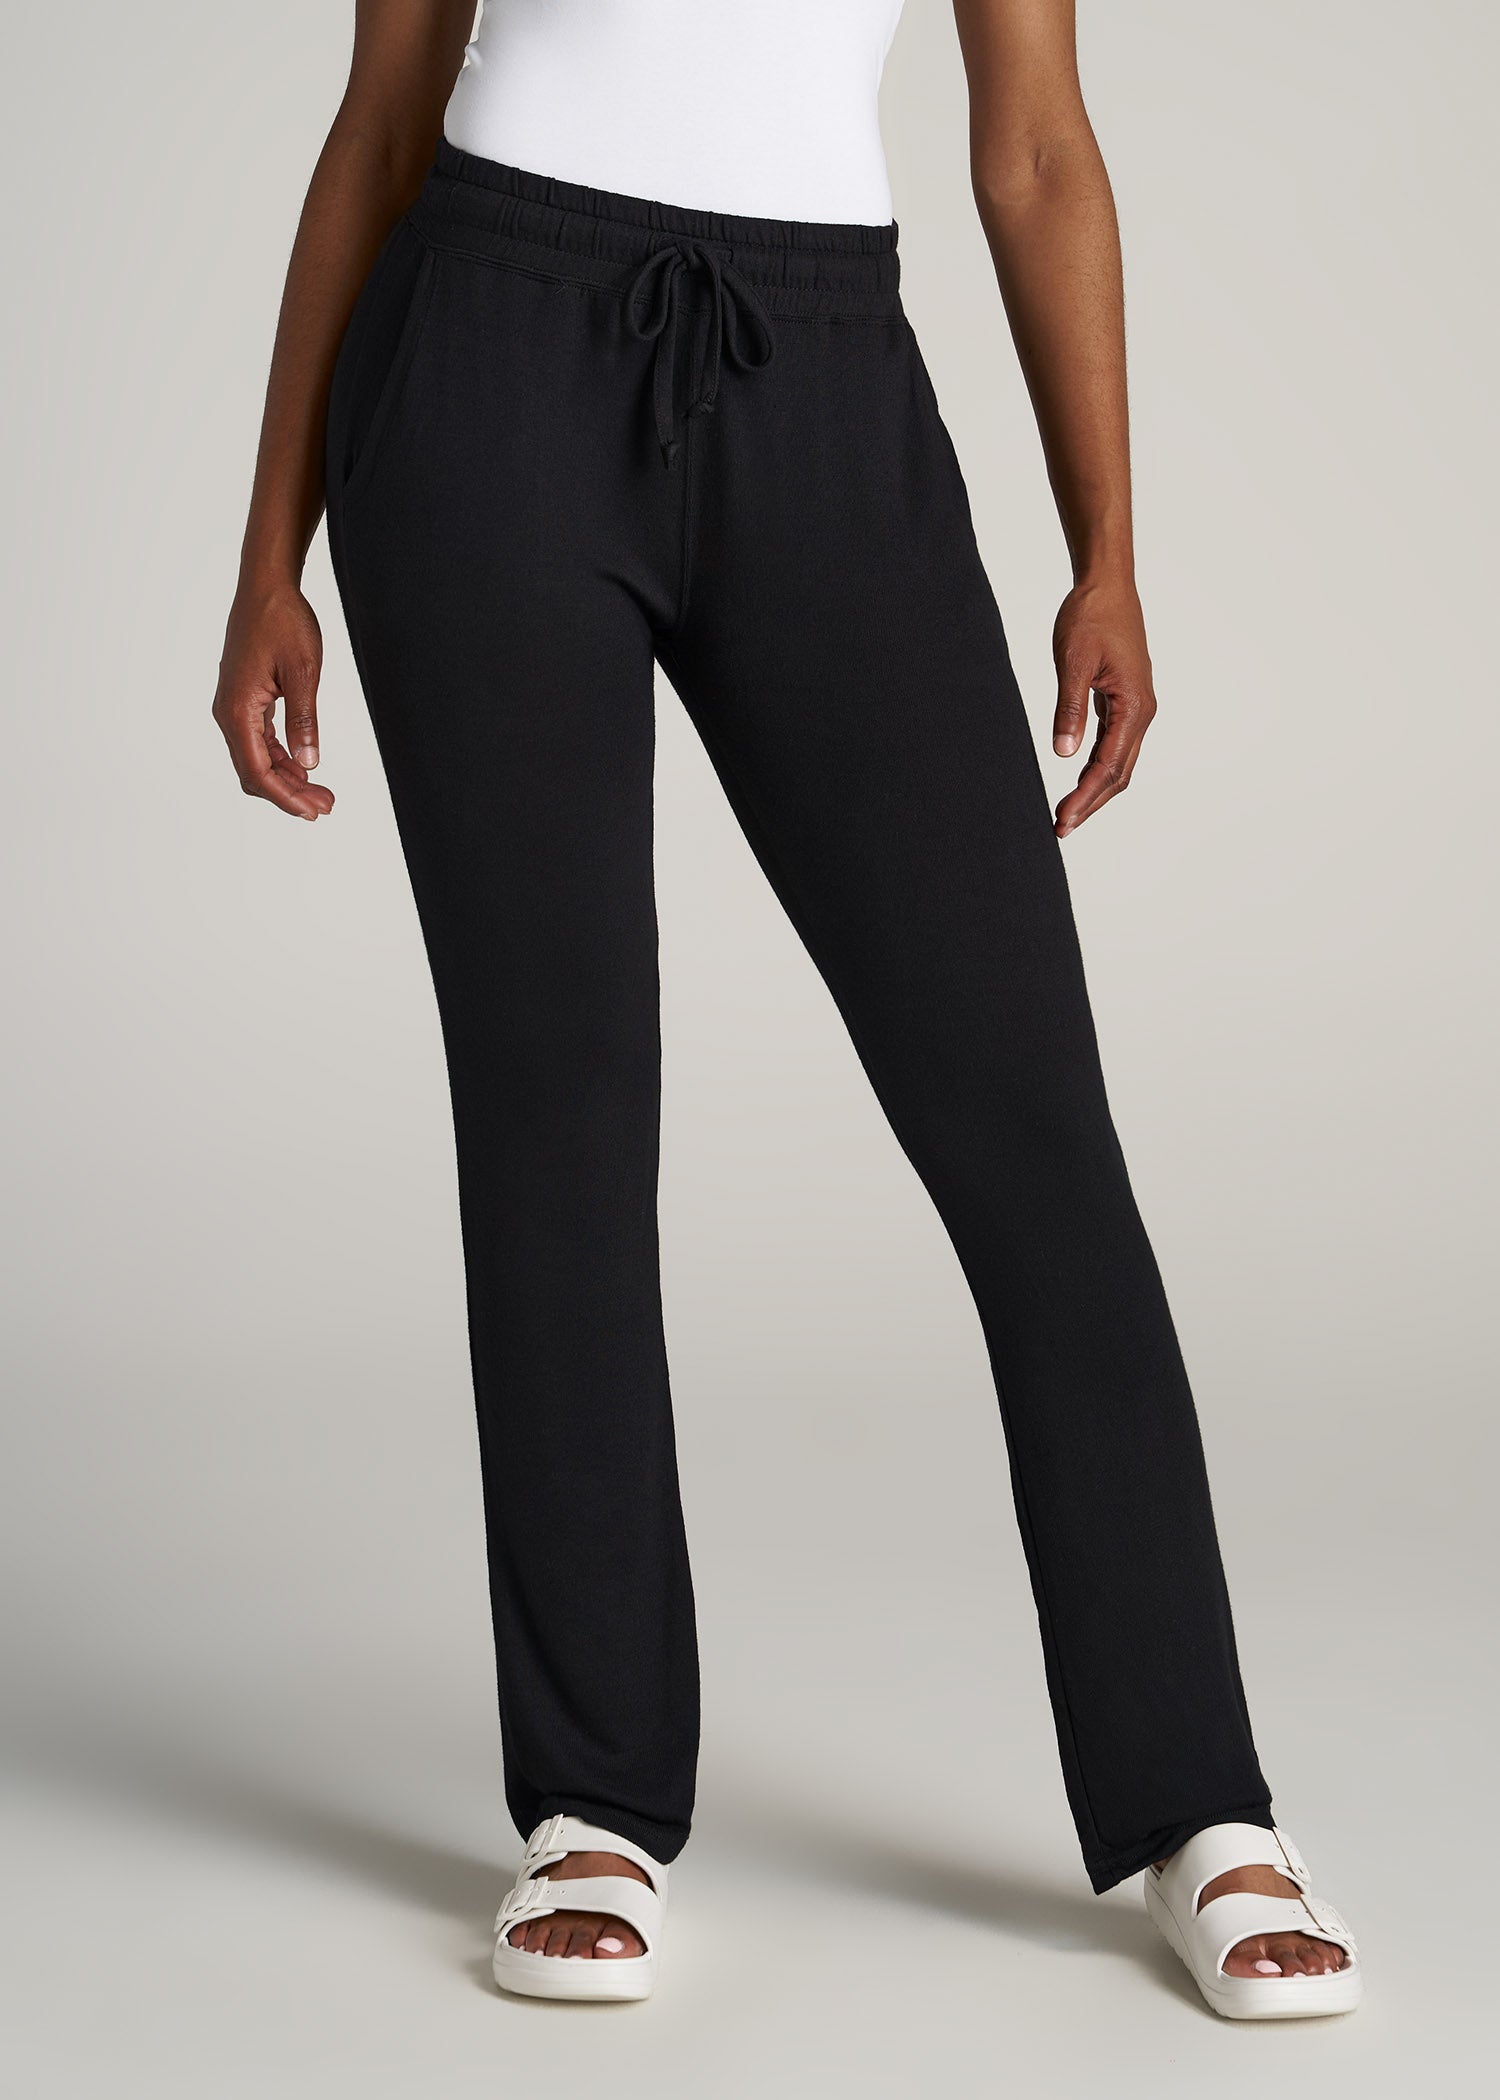 Open-Bottom Cozy PJ Lounge Pants for Tall Women in Black